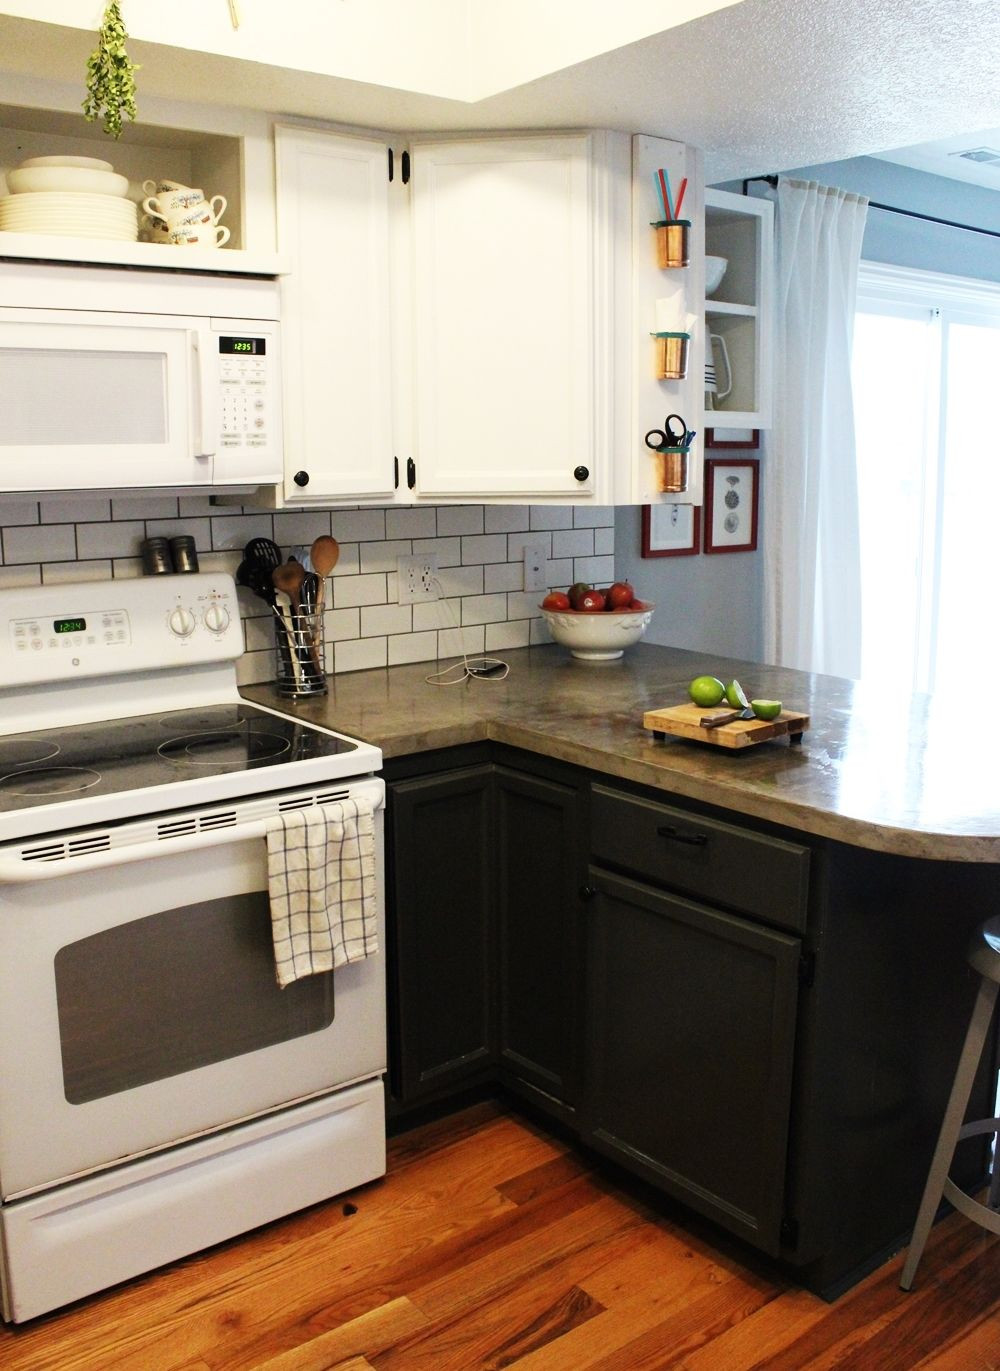 White Kitchen Subway Tiles
 How to Install a Subway Tile Kitchen Backsplash